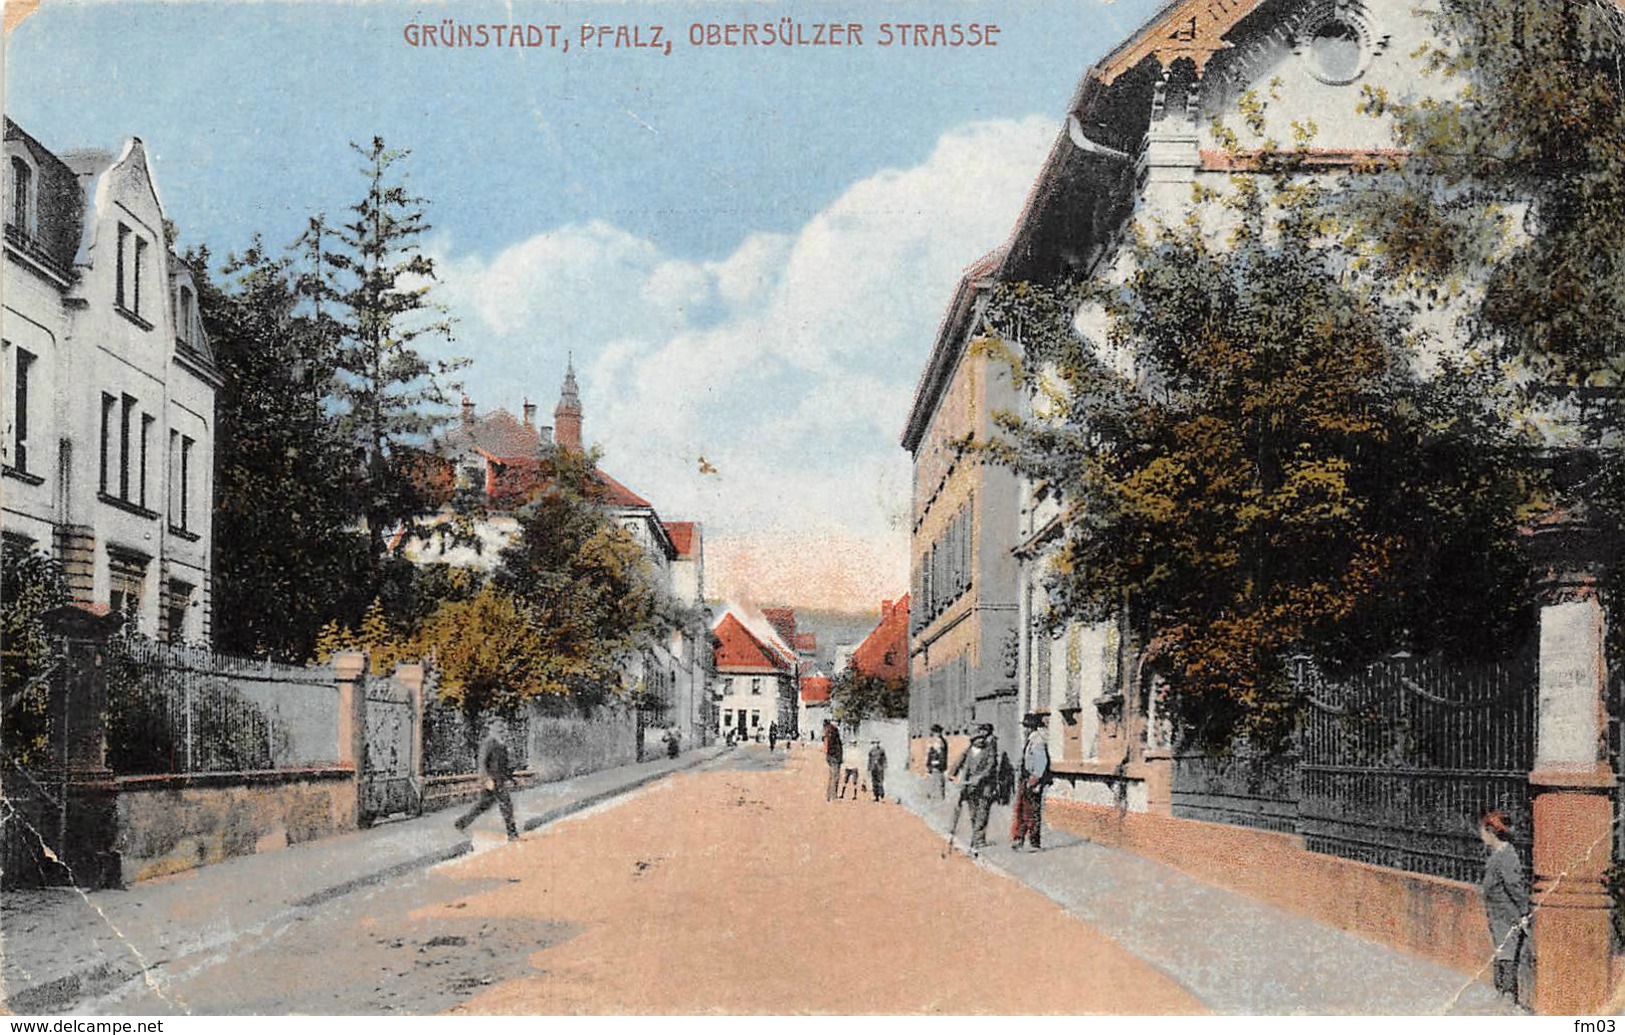 Grünstadt - Gruenstadt